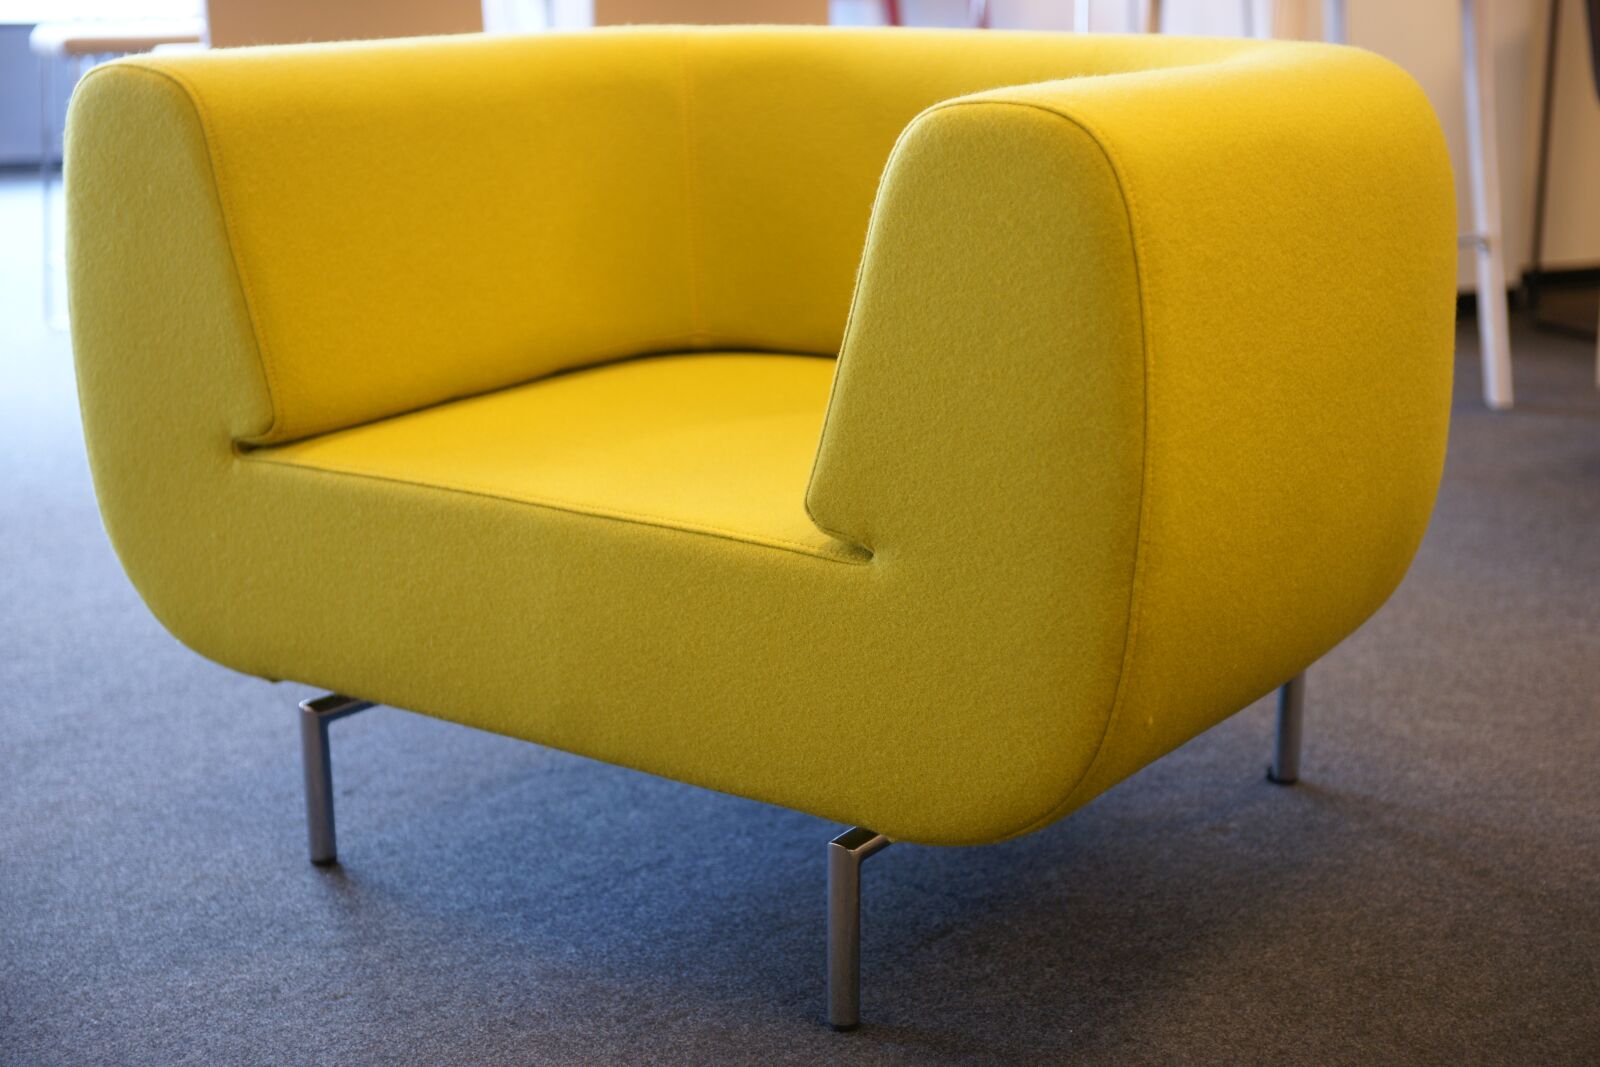 Sony Alpha DSLR-A850 sample photo. Yellow, armchair, chair photography